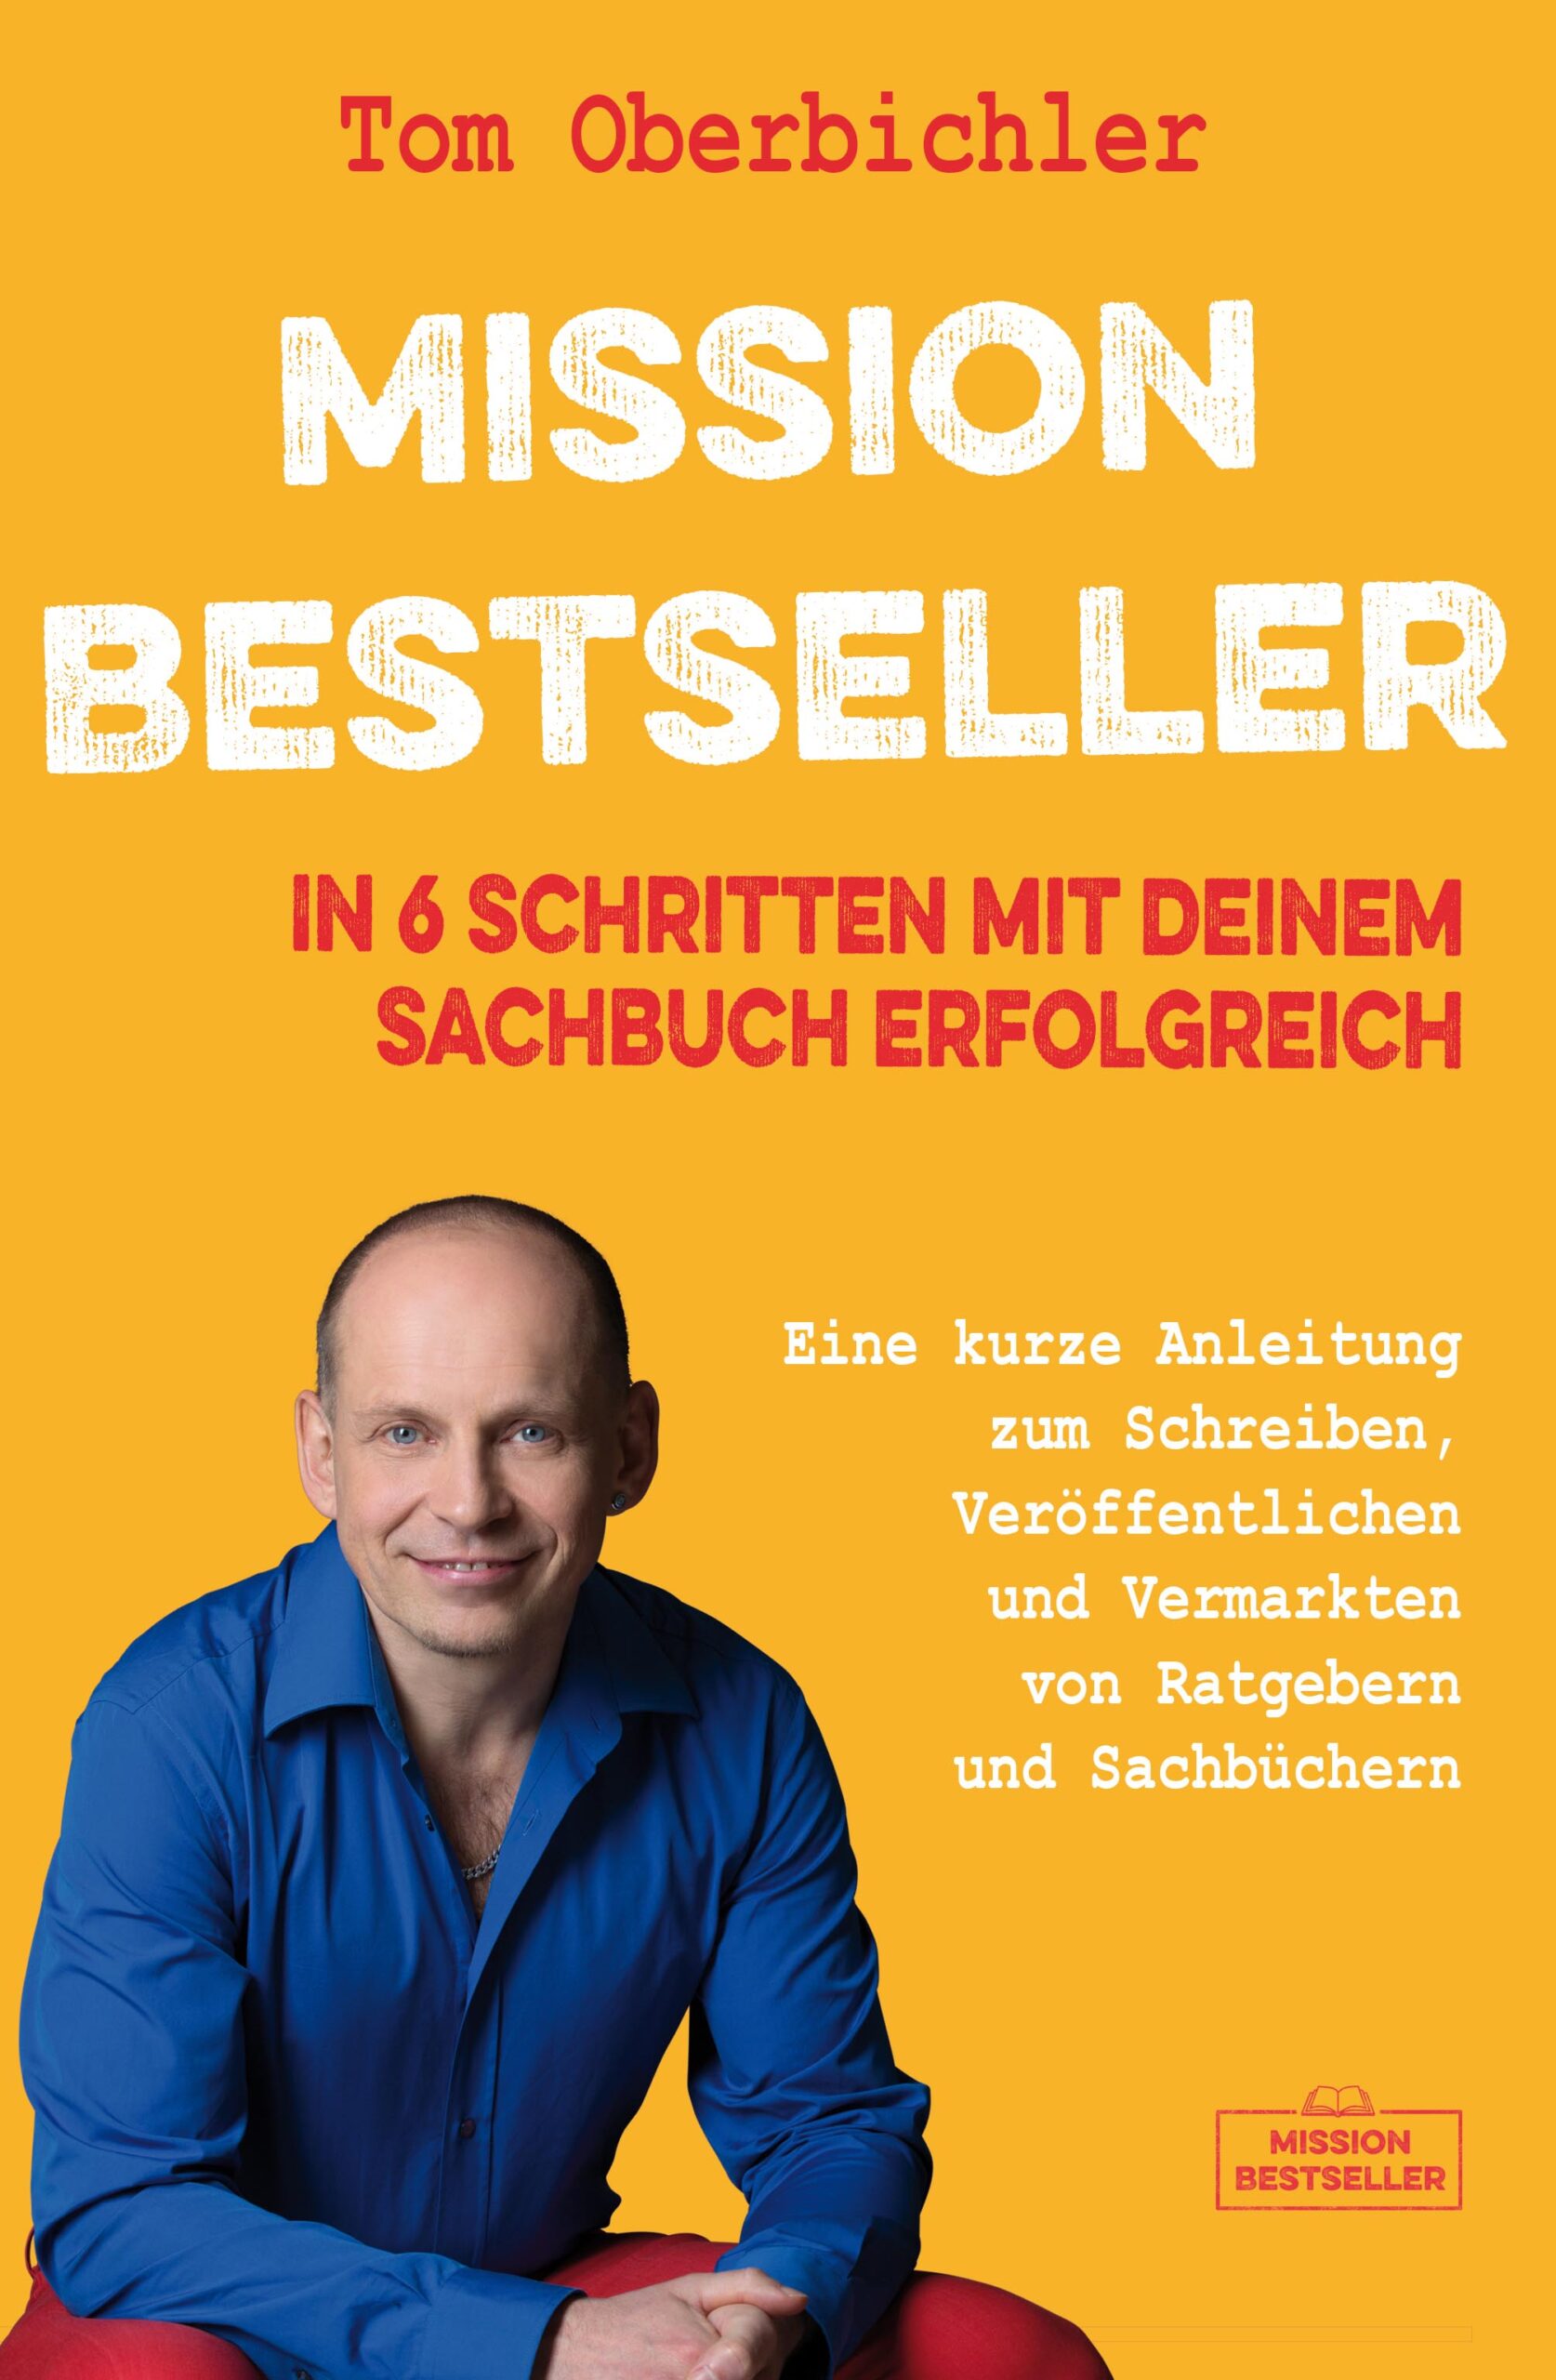 Cover des Buchs: Mission Bestseller - in 6 Schritten mit deinem Sachbuch erfolgreich - mit foto des Autors Tom Oberbichler